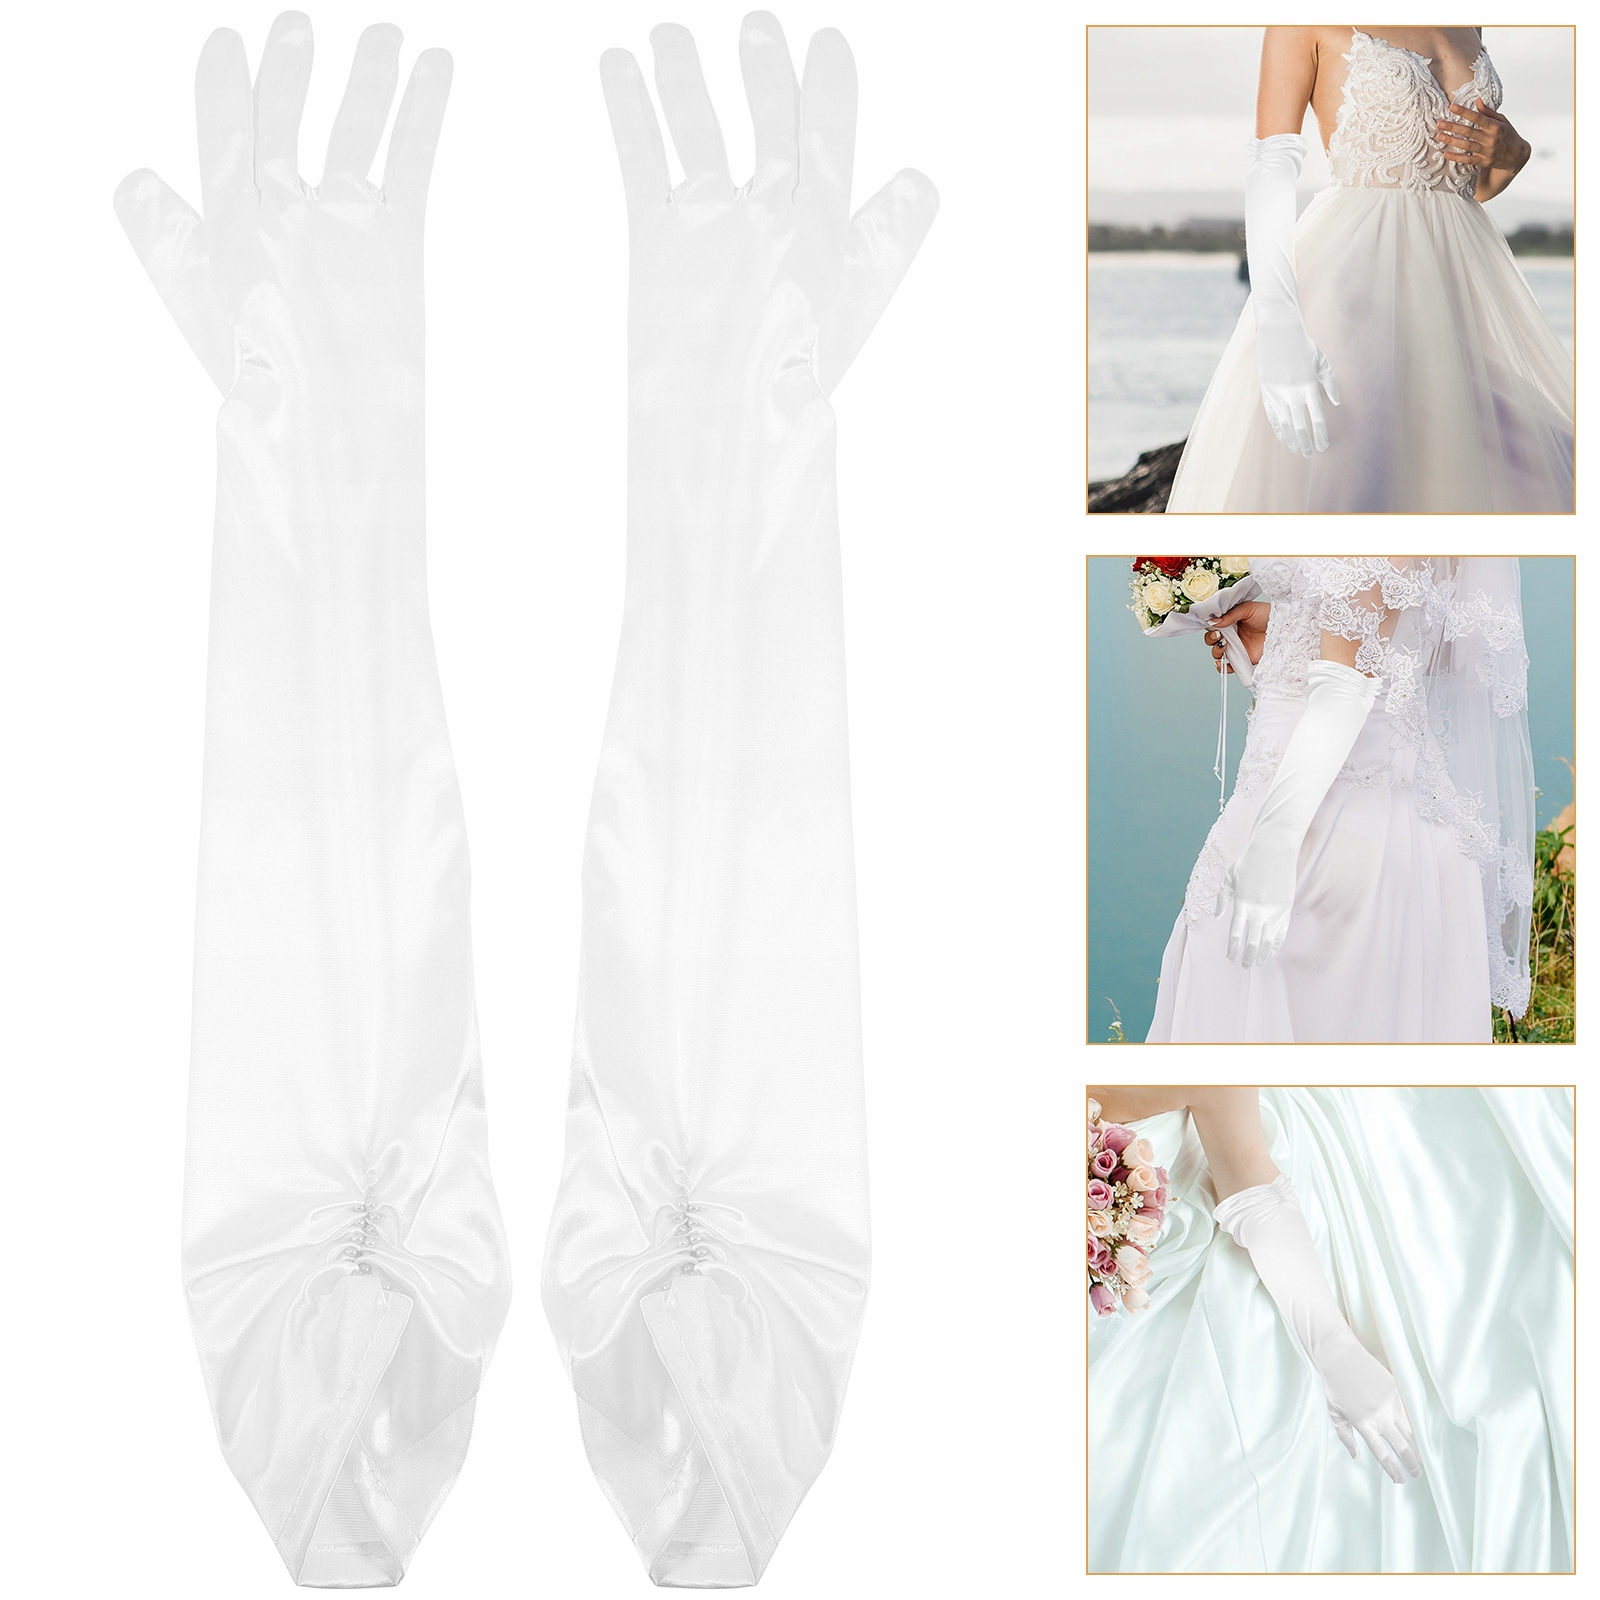 3 пари весільних рукавичок весільні рукавички прикраси немає